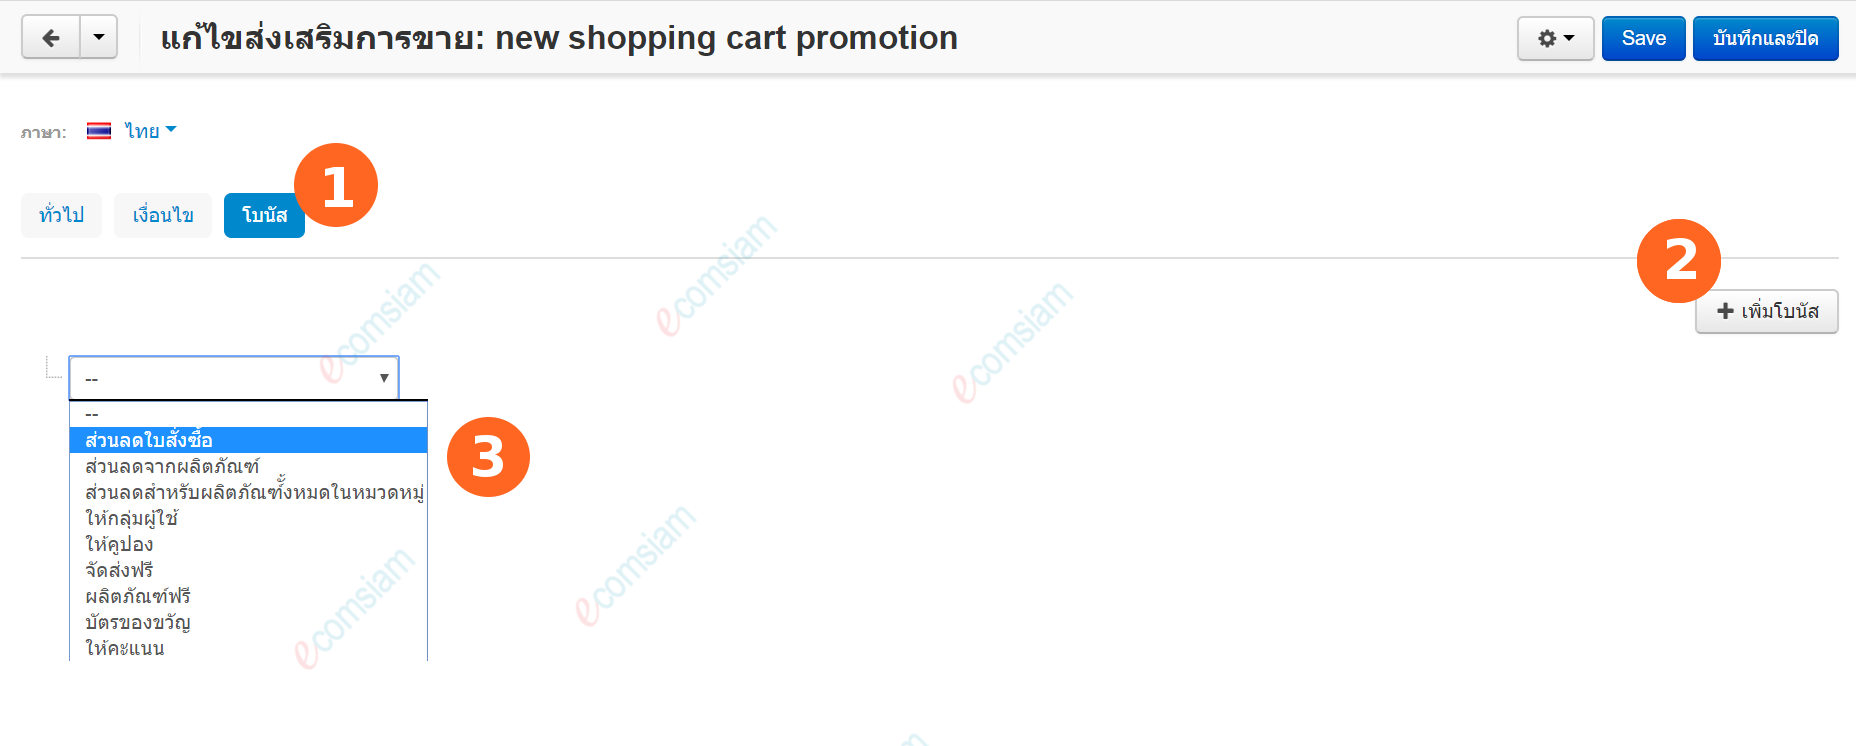 เว็บไซต์สำเร็จรูปไทย - คู่มือร้านออนไลน์ - การจัดการร้านออนไลน์ - สร้างเว็บไซต์ - การตลาด โปรโมชั่น promotion สร้างคูปอง